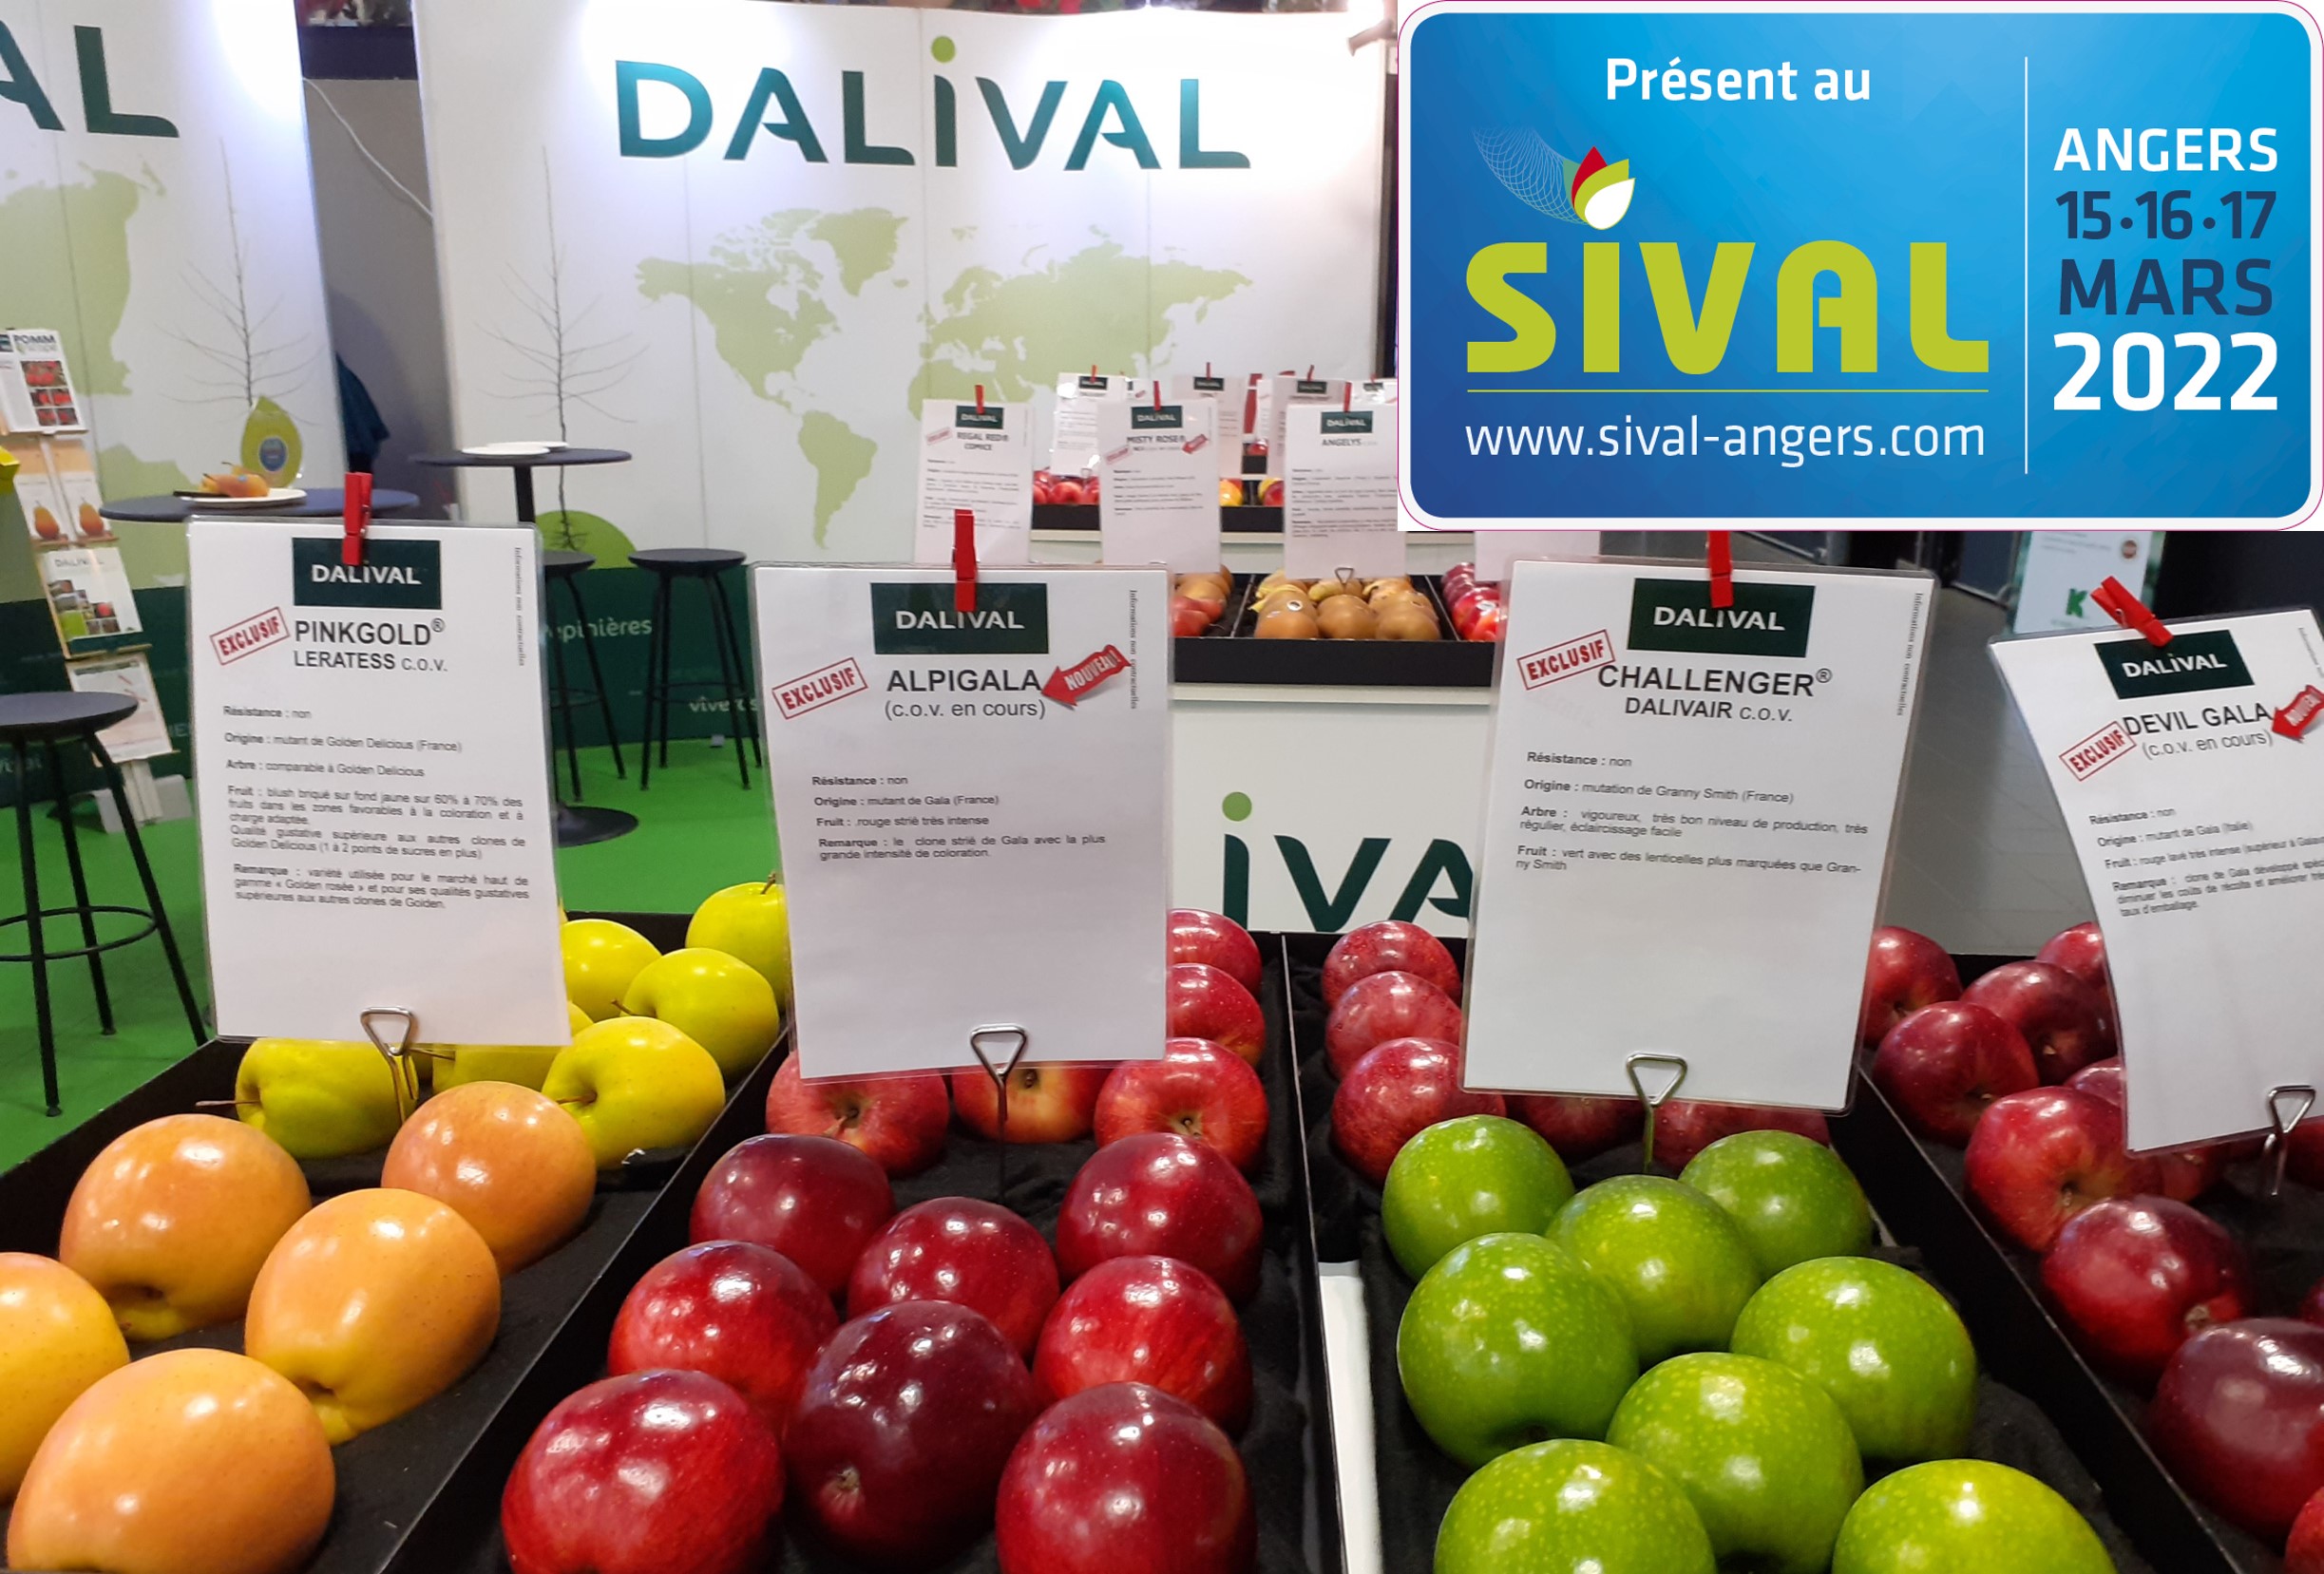 Dalival présent au SIVAL 2022